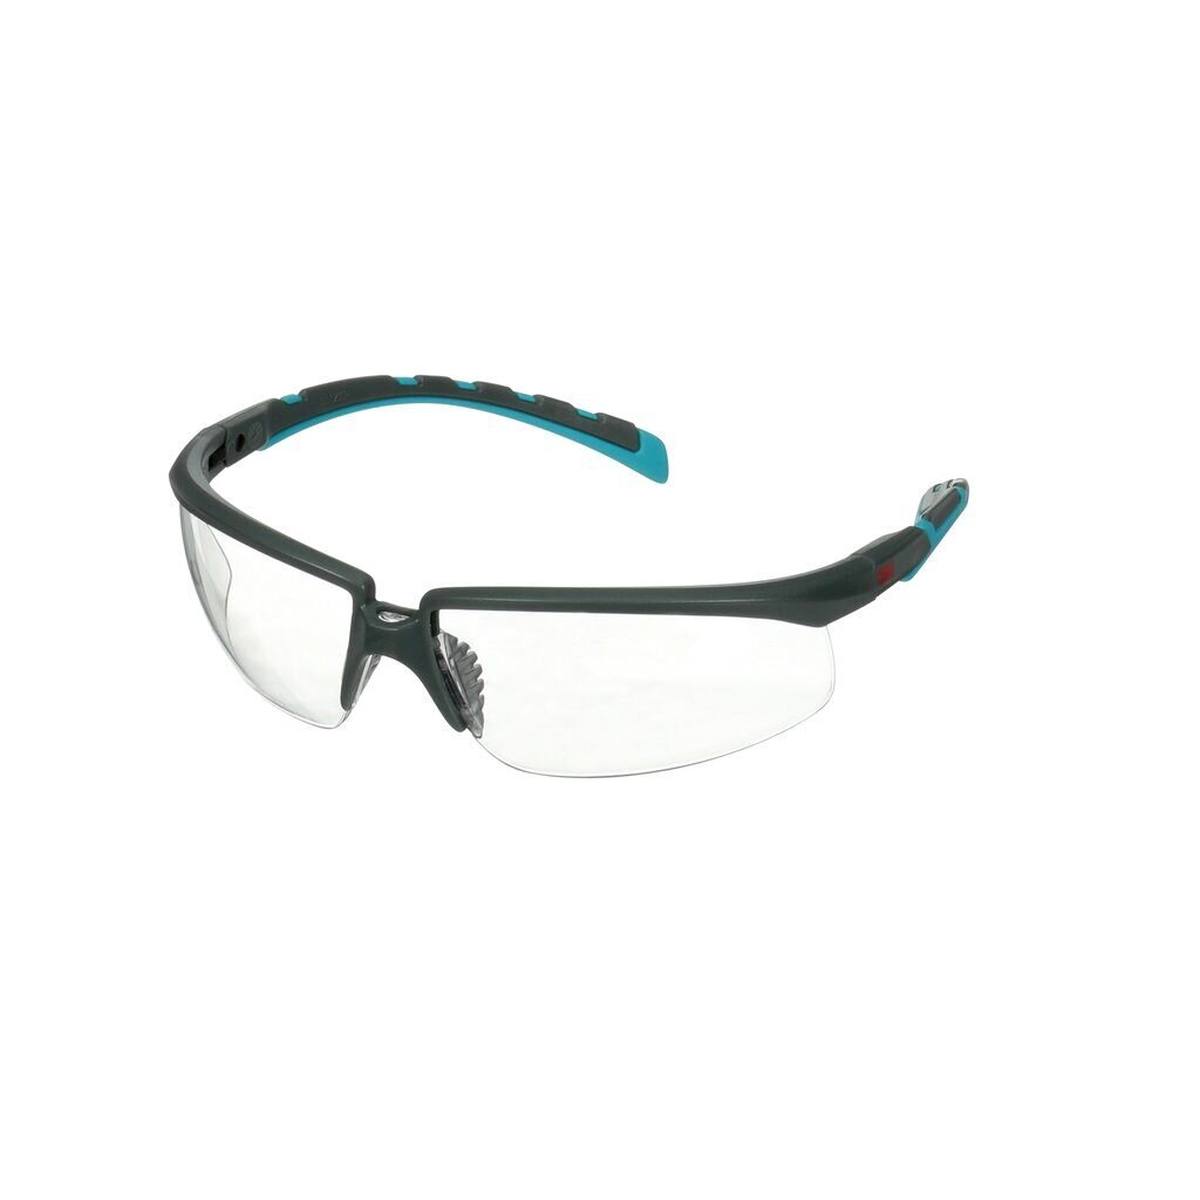 3M Solus 2000 lunettes de protection, branches bleues/grises, anti-rayures+ (K), écran incolore, angle réglable, S2001ASP-BLU-EU